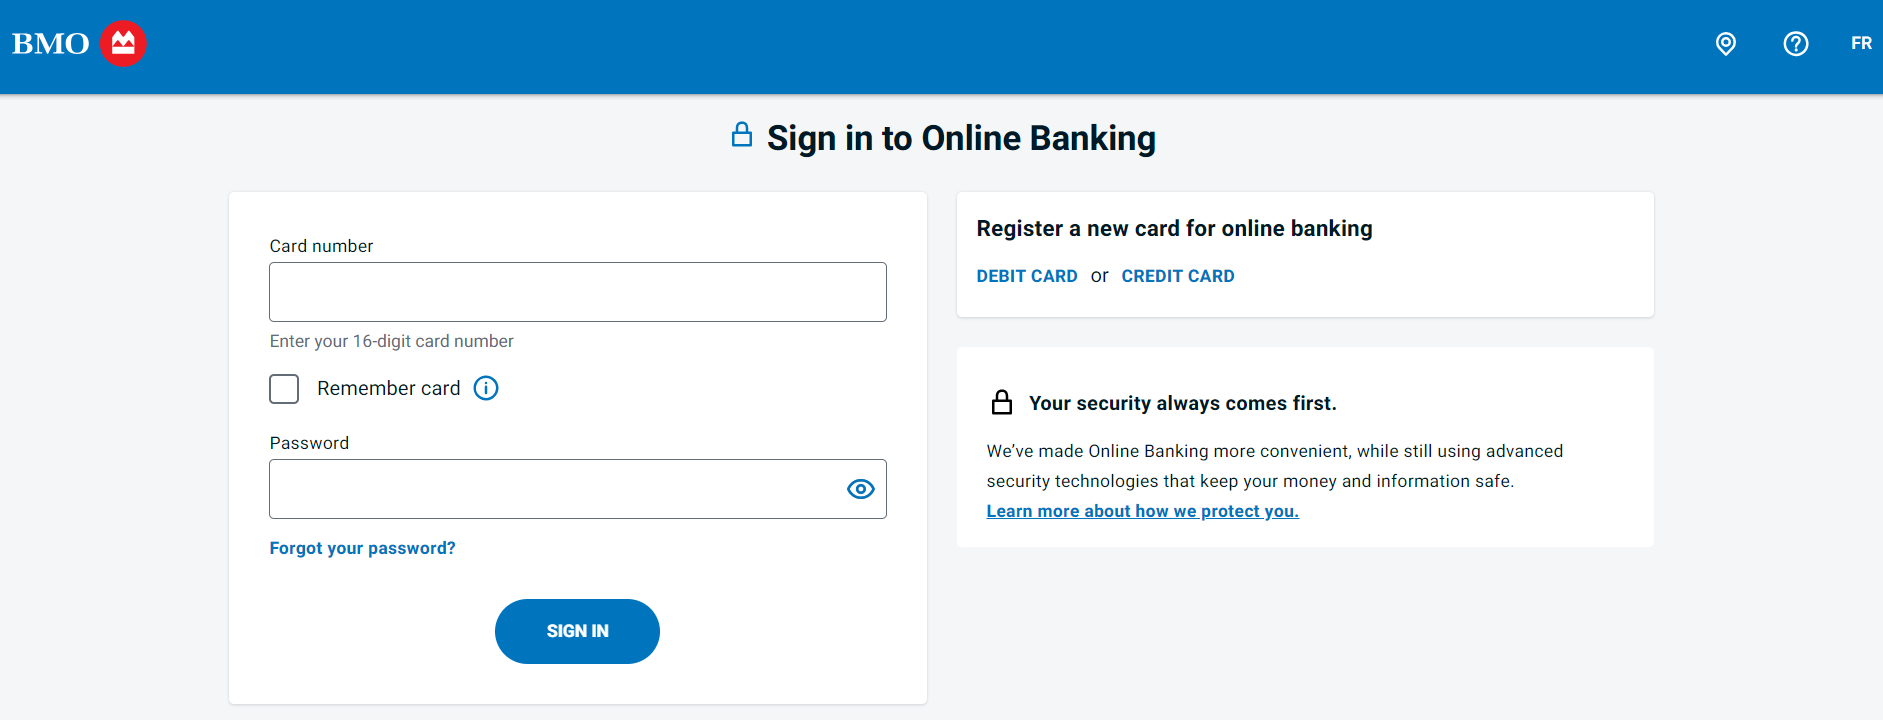 BMO Online Personal Banking Login